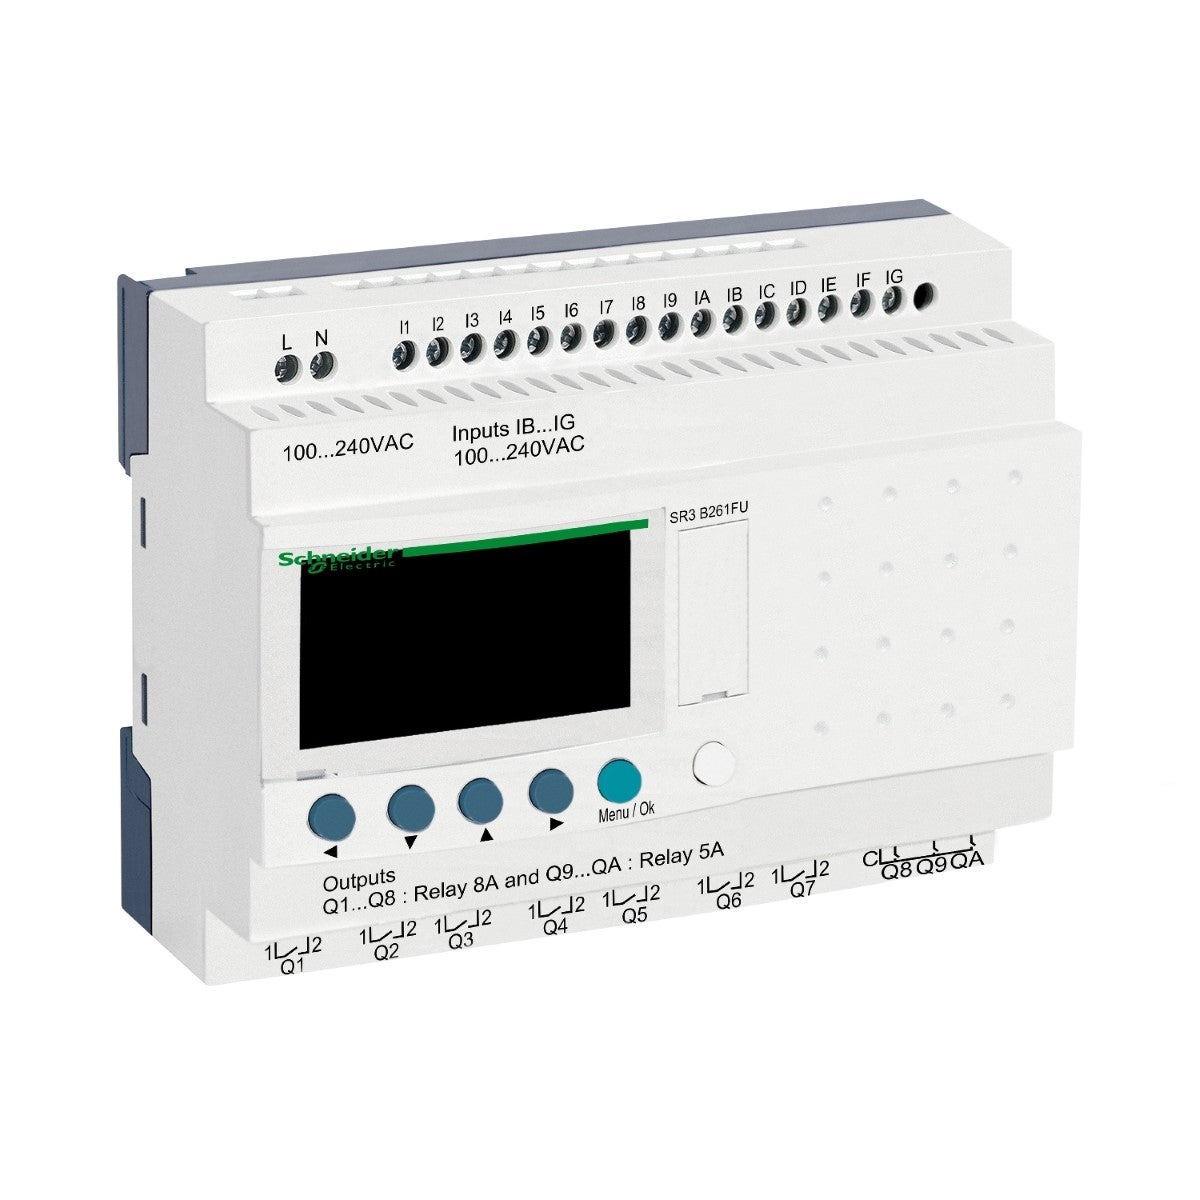 Modular smart relay, Zelio Logic, 26 I/O, 100...240 V AC, clock, display